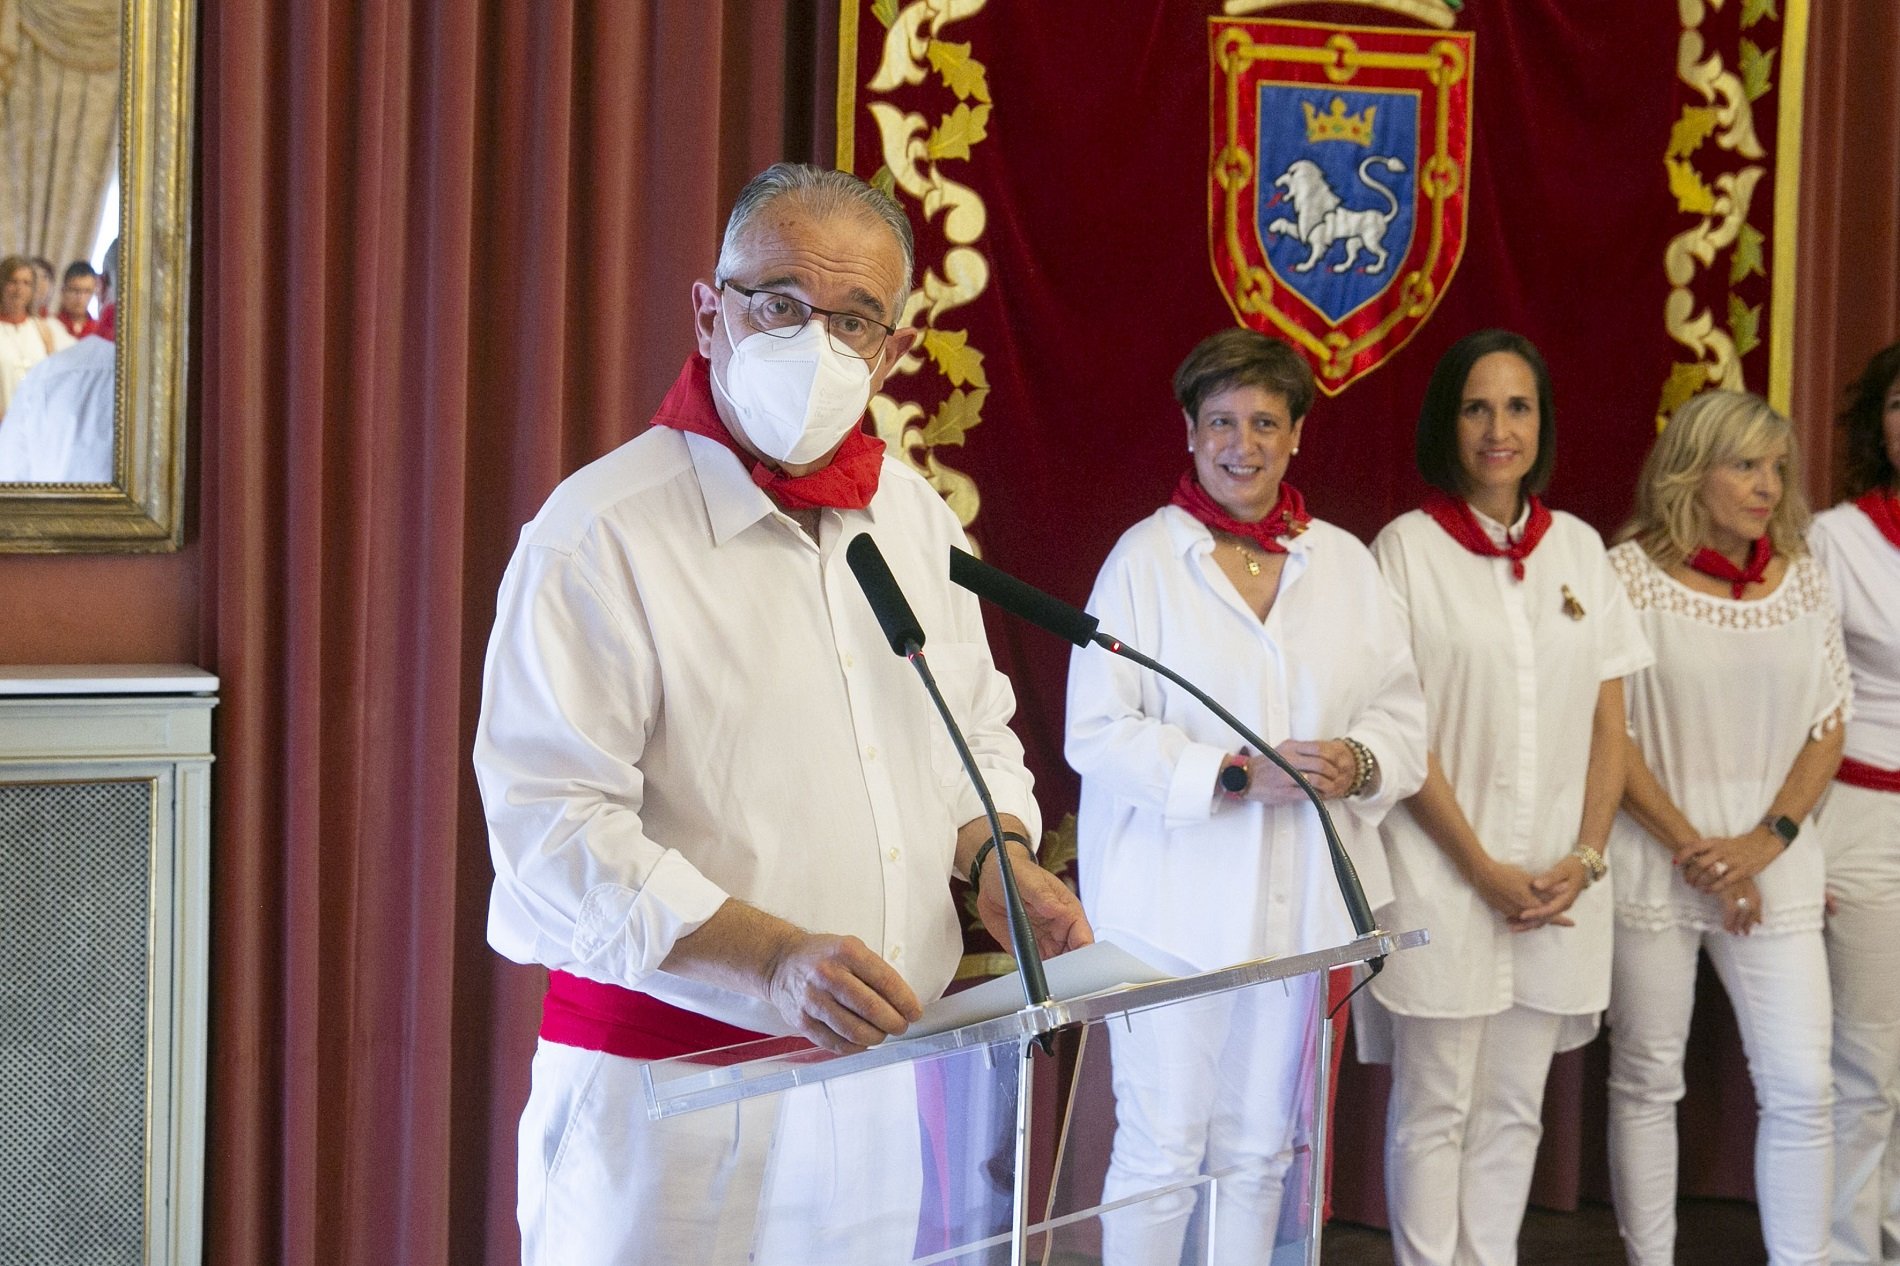 L'alcalde de Pamplona, positiu en covid, manté la seva agenda de San Fermín